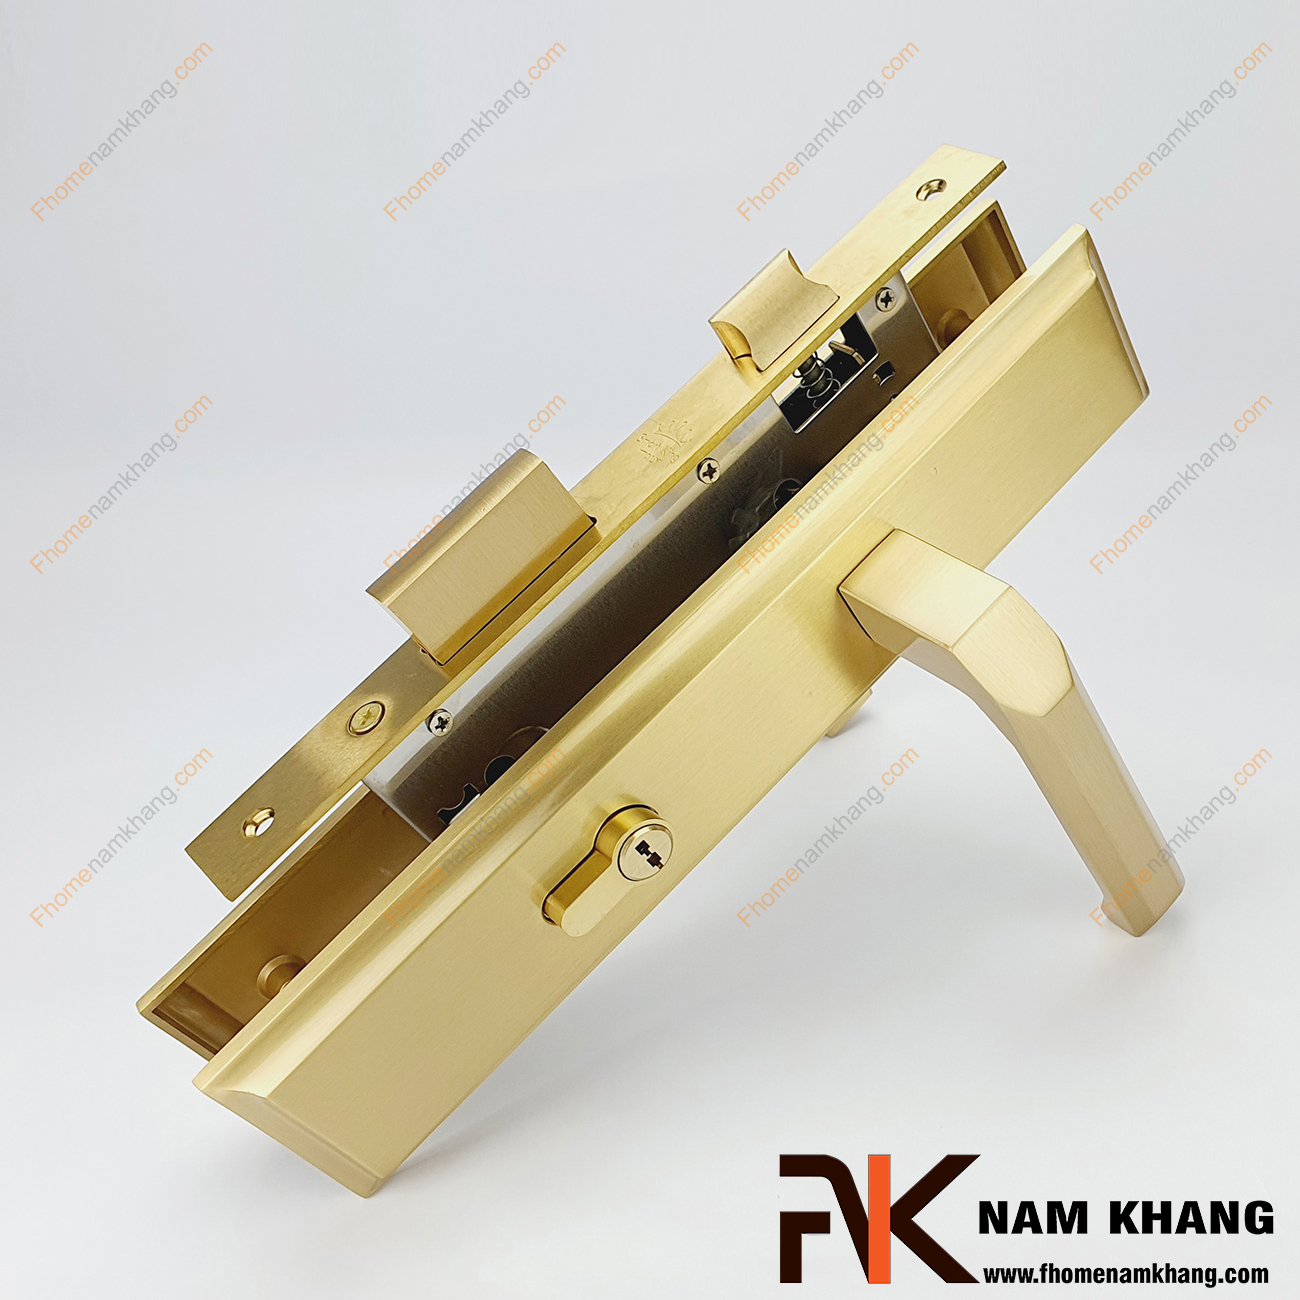 Khóa cửa chính dạng ốp trơn màu đồng vàng NK561L-DV được sản xuất từ đồng cao cấp, bền bỉ và có kết cấu bền chặt. Dòng khóa này có thiết kế dạng vuông, mang màu sắc sáng đẹp, làm tăng giá trị thẩm mĩ cao.